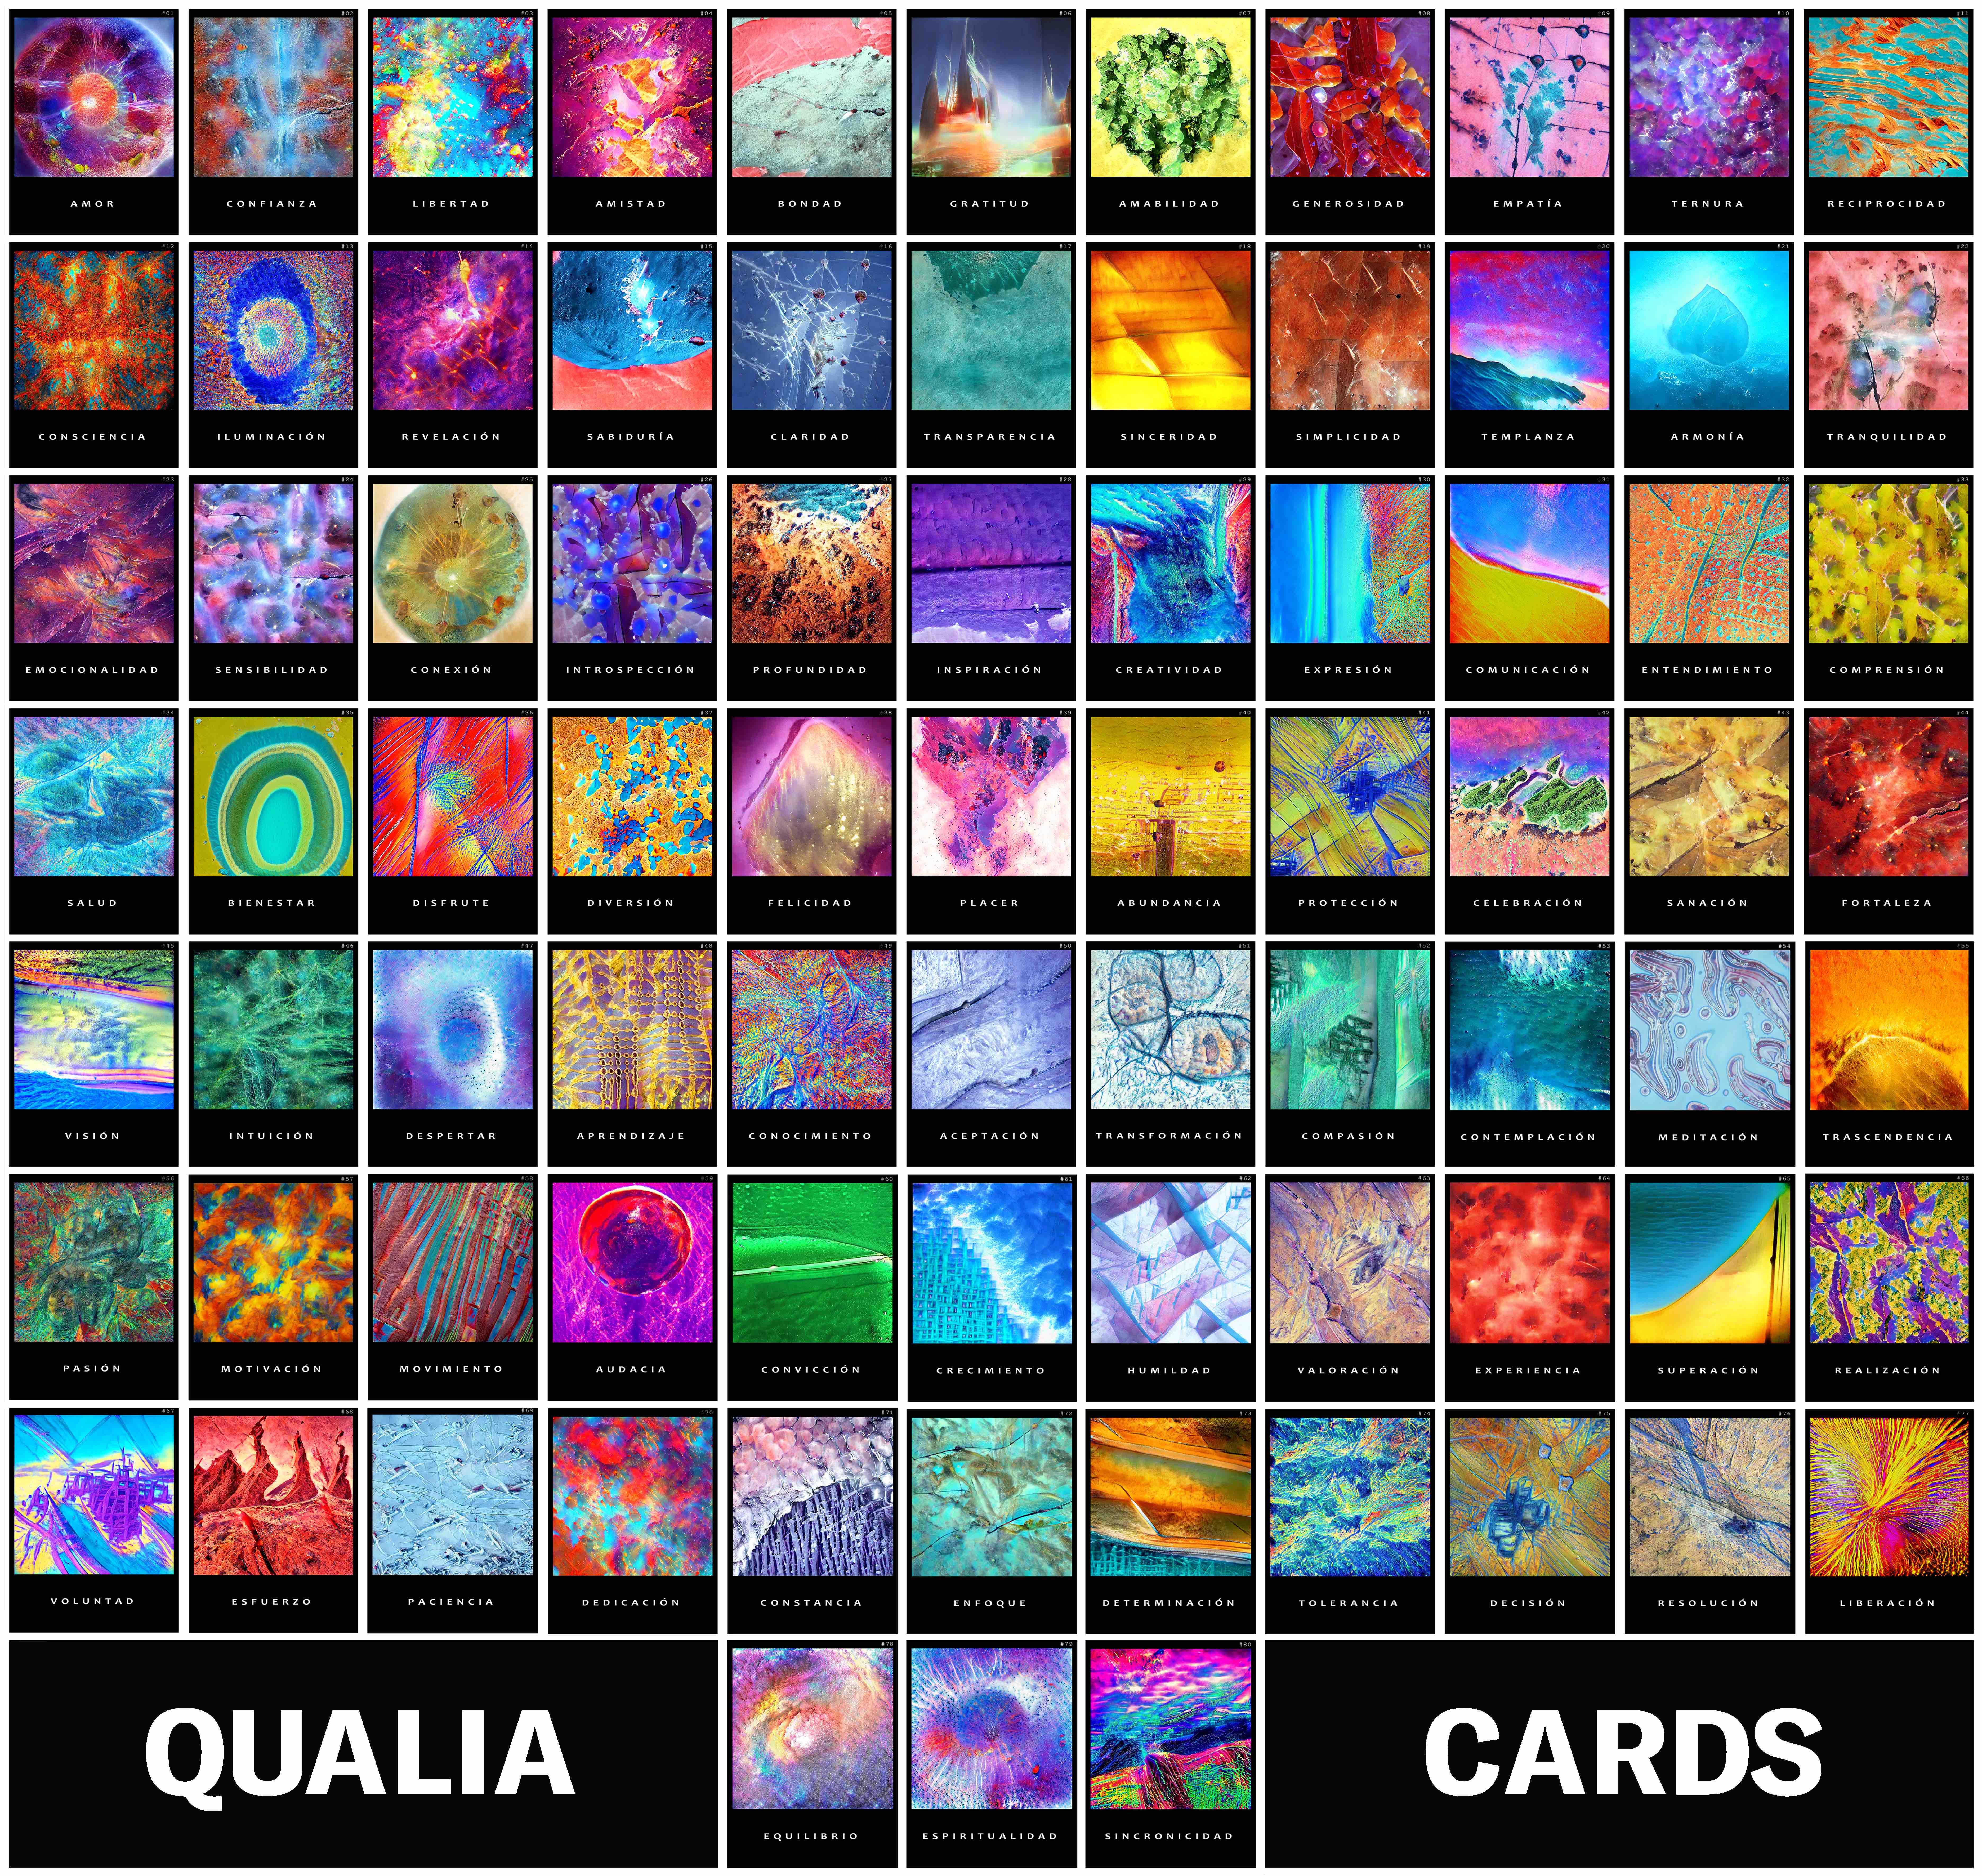 Qualia-Cards